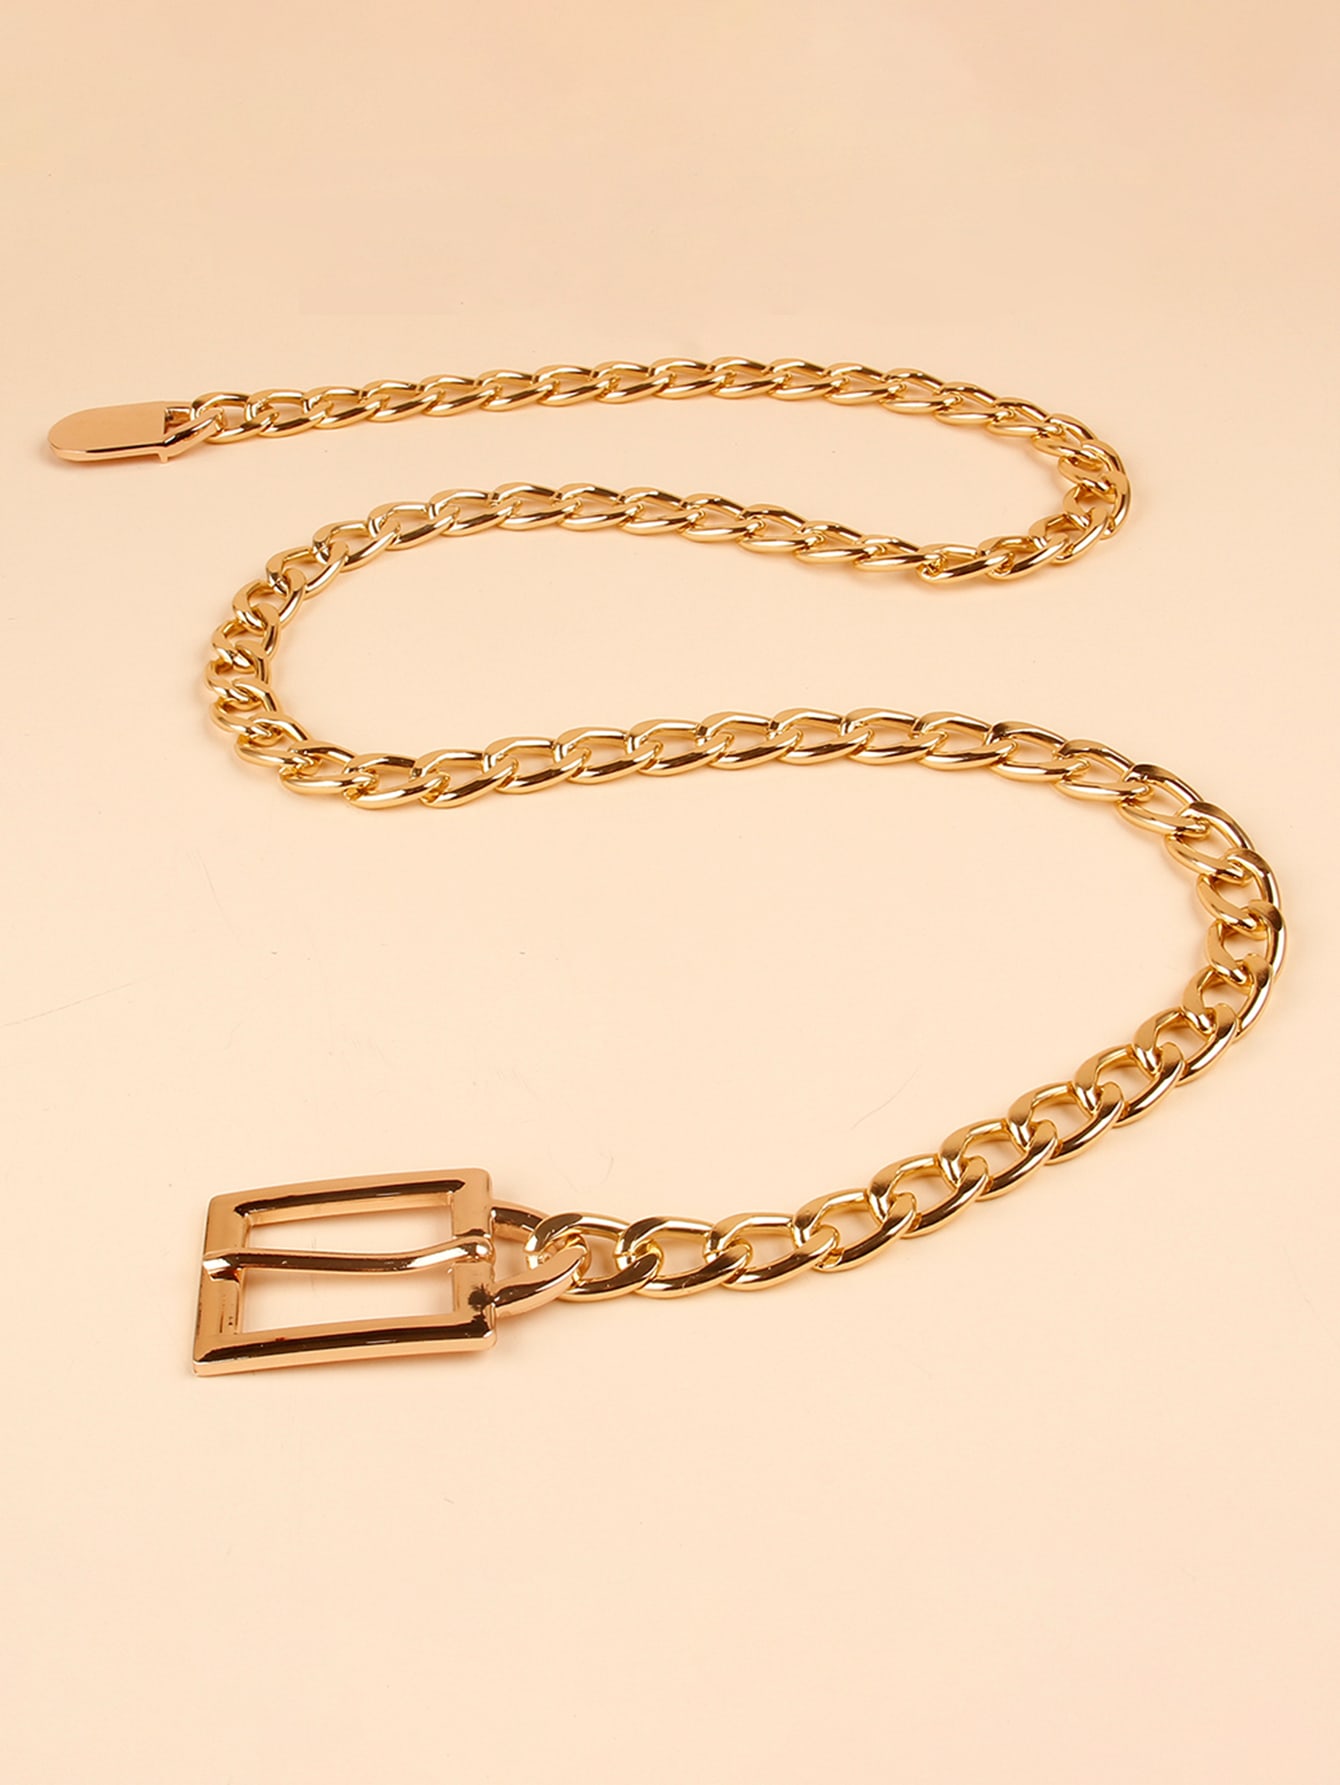 Женский ремень-цепочка с квадратной пряжкой размера 135 см, золото